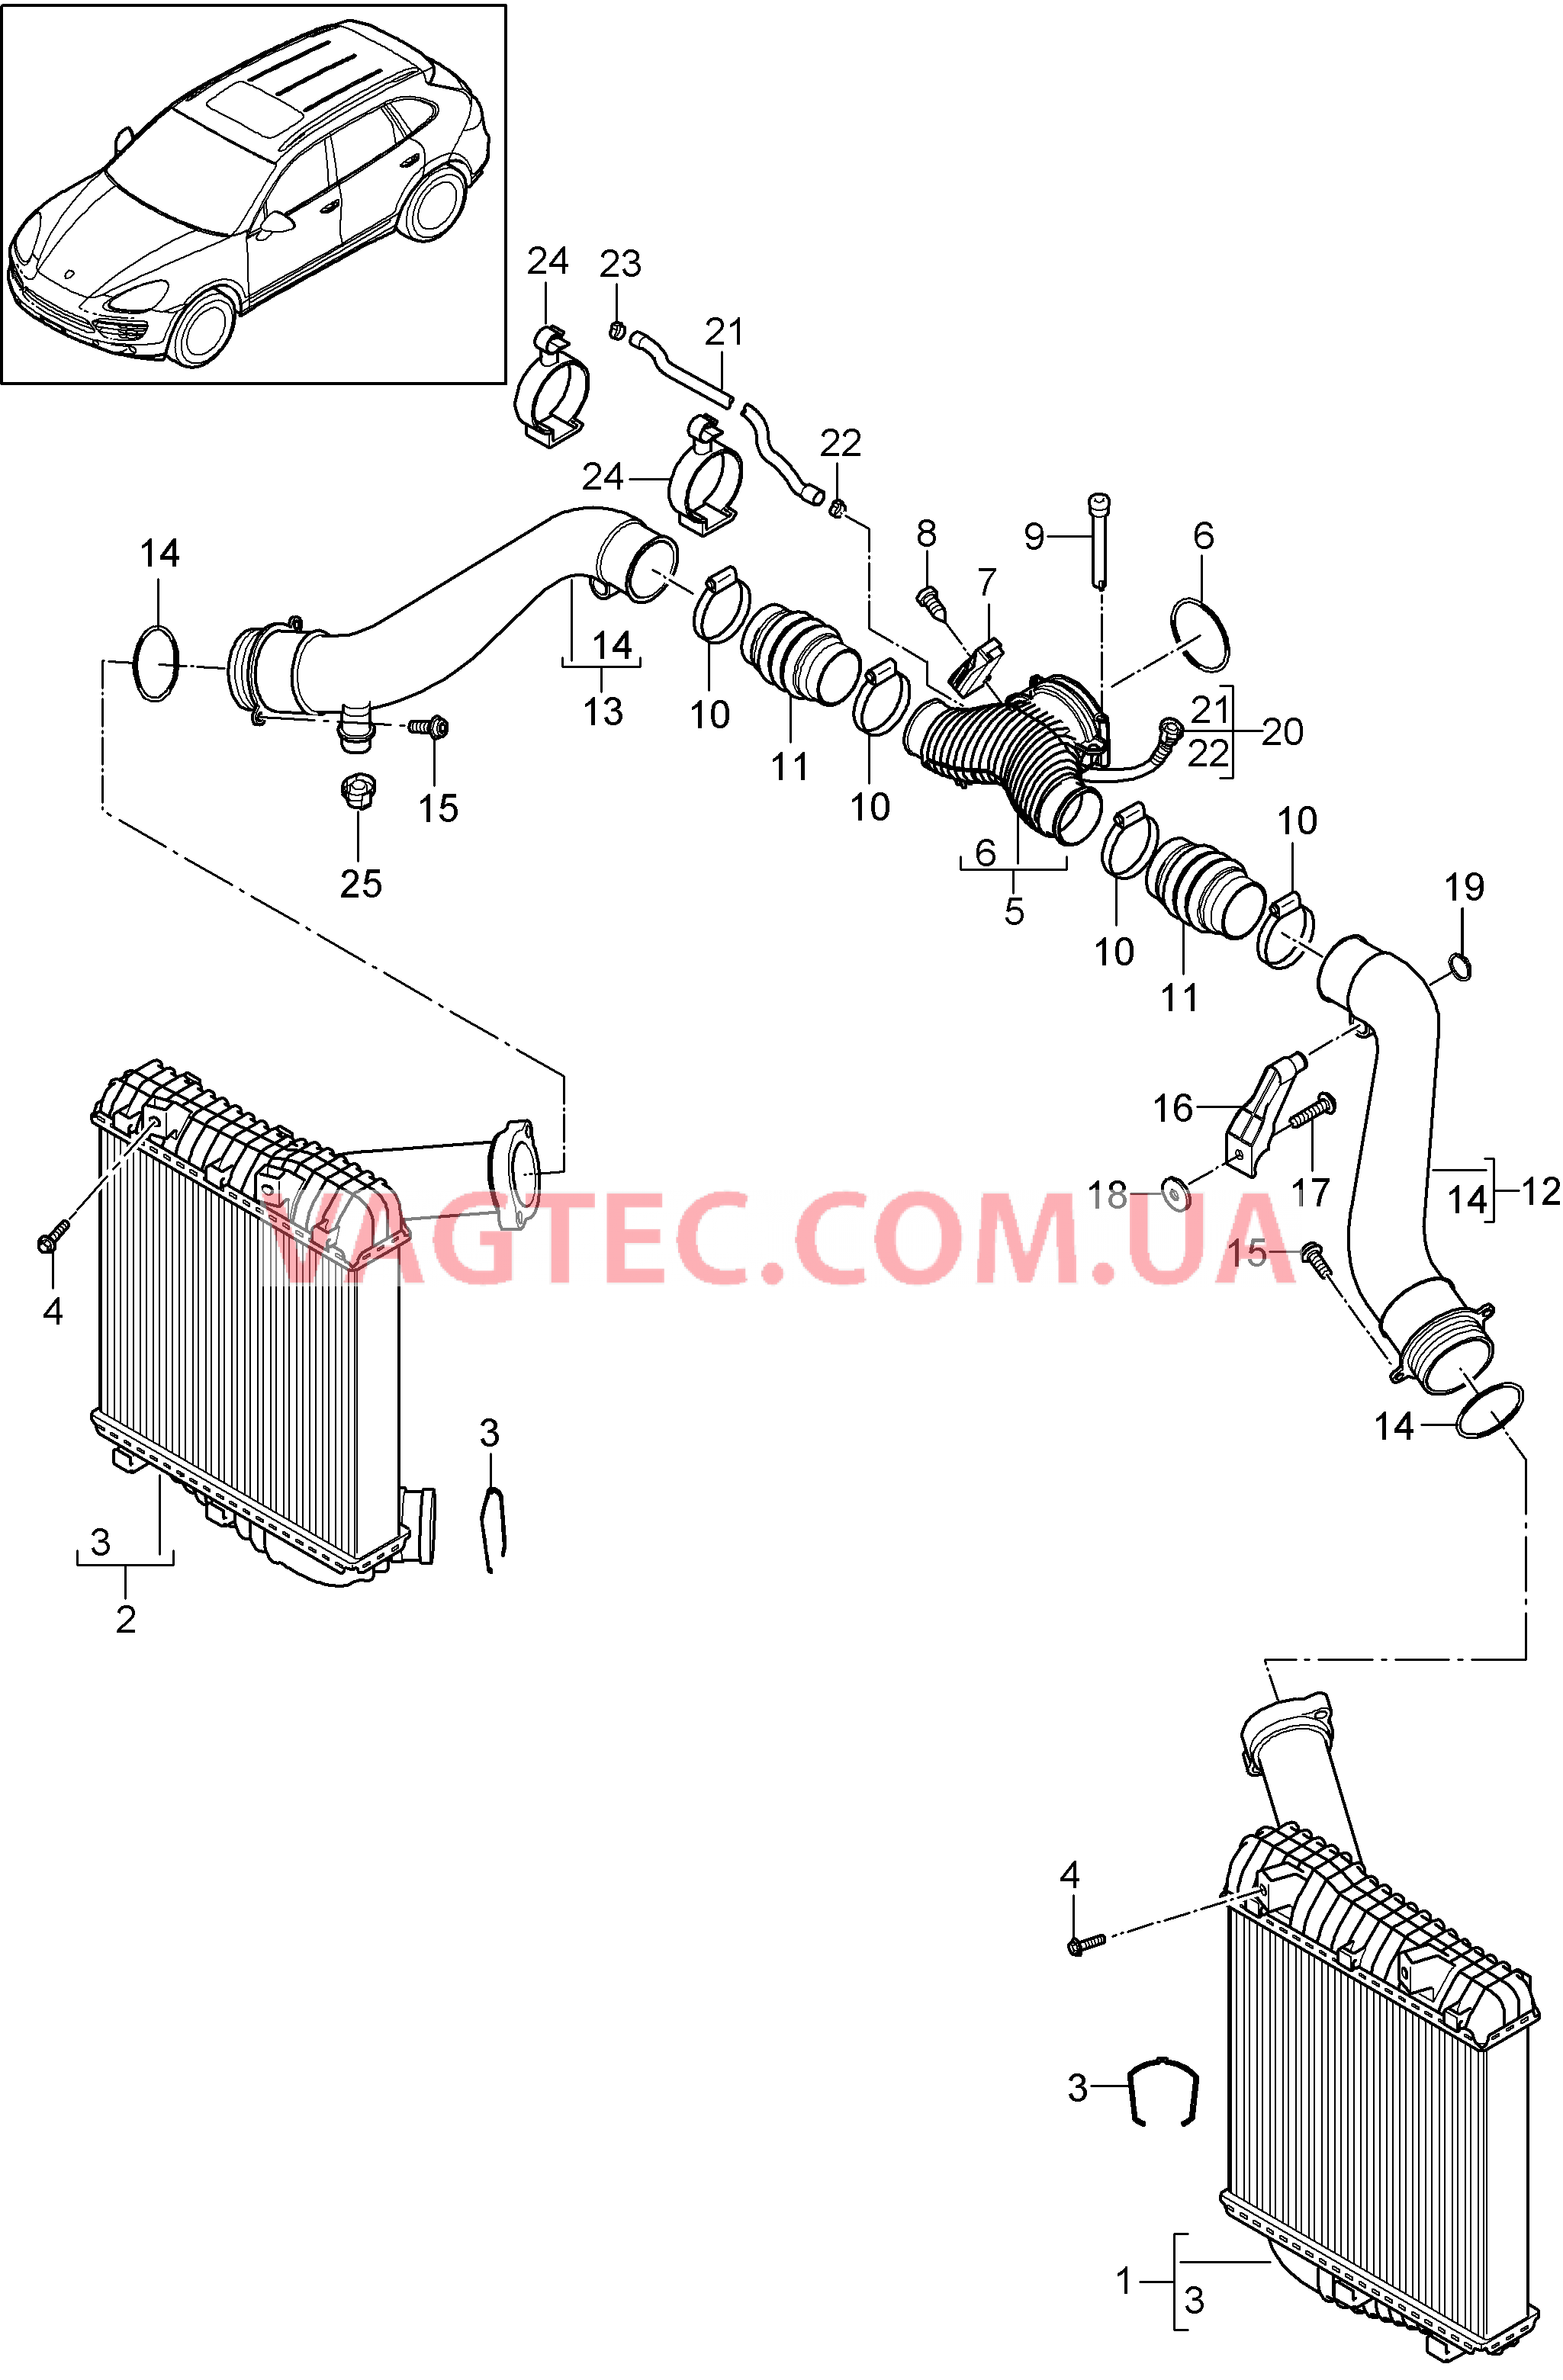 107-070 Интеркулер, Напорная трубка
						
						IDT1/DT5/D58 для PORSCHE Cayenne 2011-2018